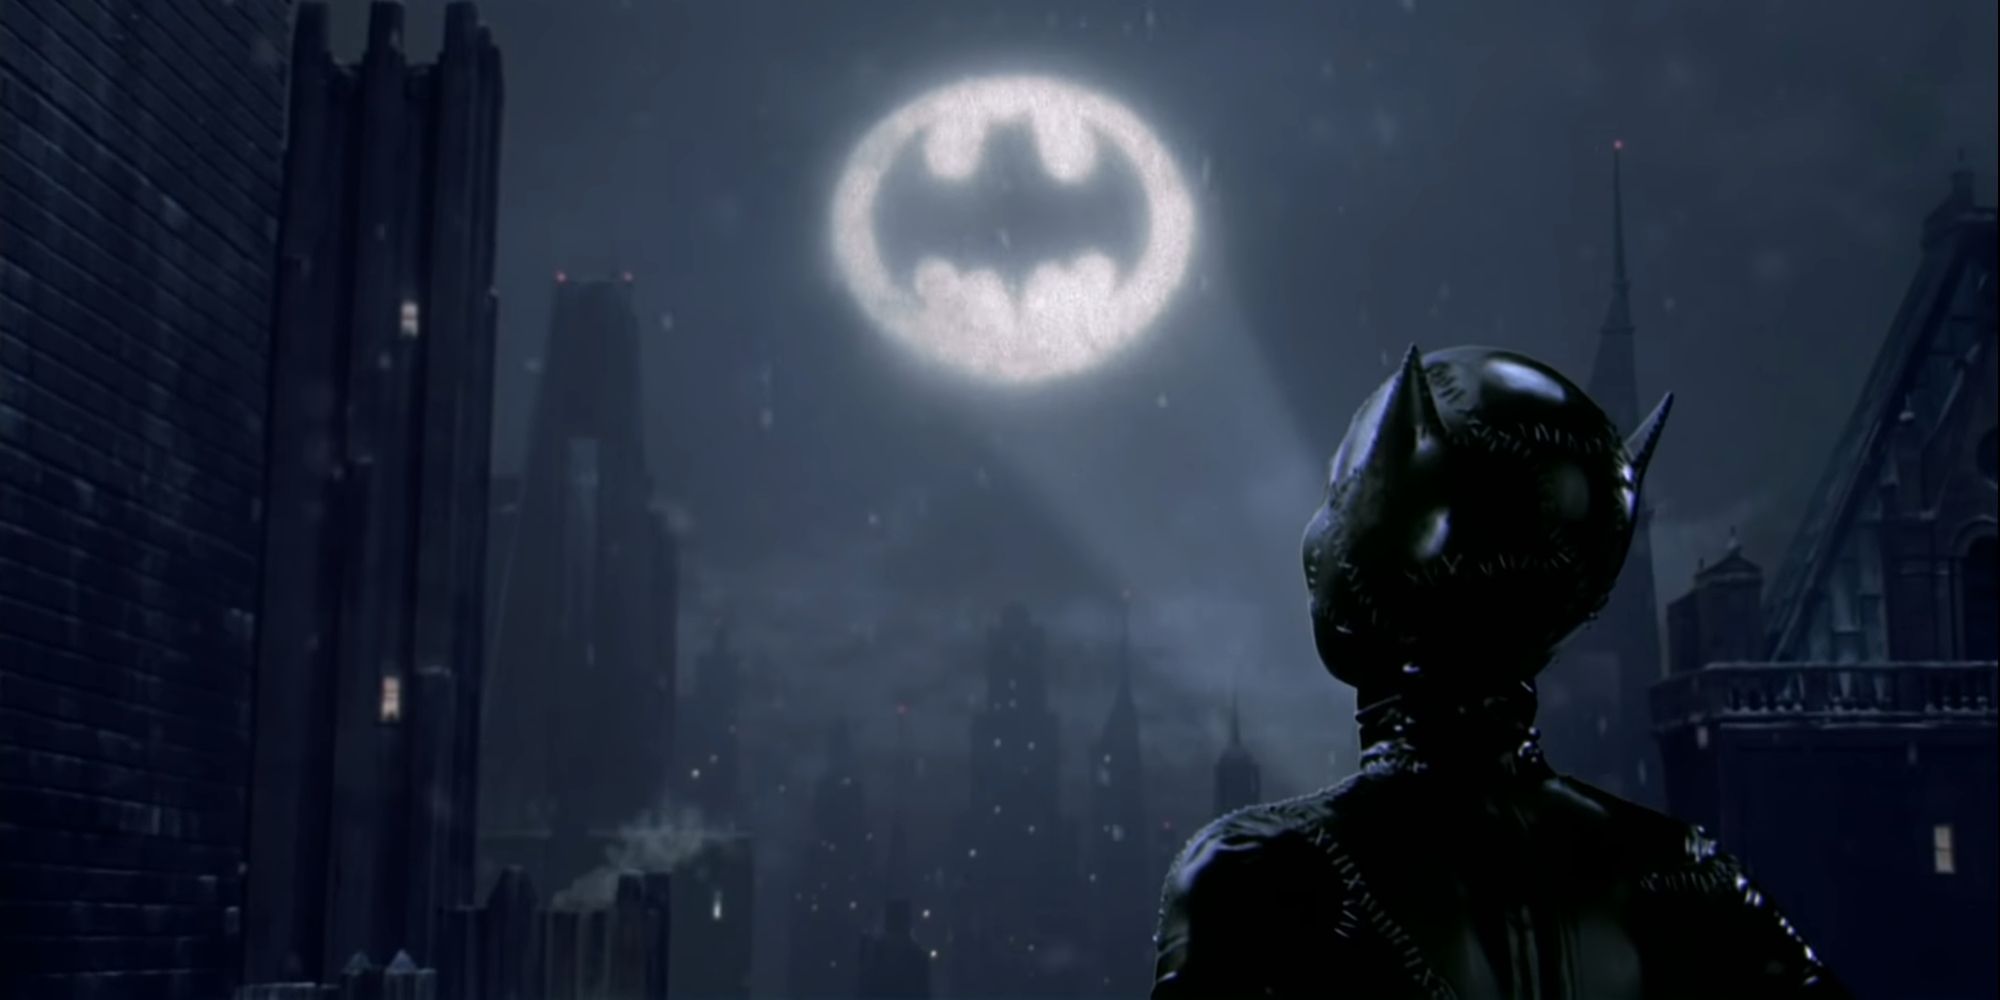 Selina Kyle, também conhecida como Catwoman, olhando para o Bat-sinal no céu em Batman Returns (1992)